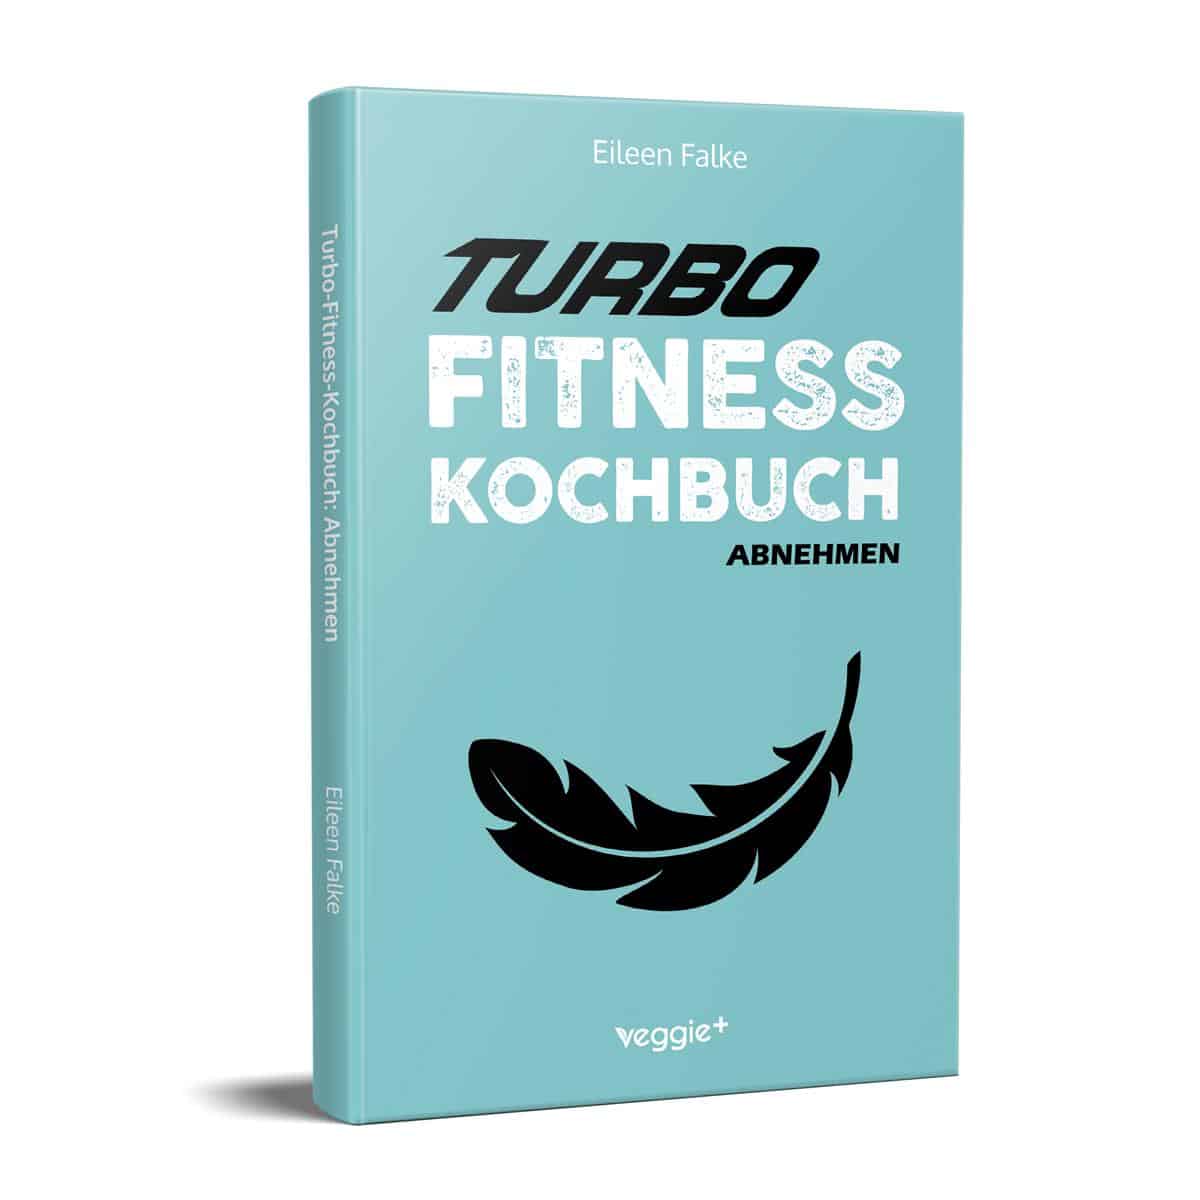 Turbo-Fitness-Kochbuch (abnehmen): 100 schnelle Fitness-Rezepte für eine gesunde Ernährung und einen effizienten Fettabbau von Eileen Falke im veggie + Verlag